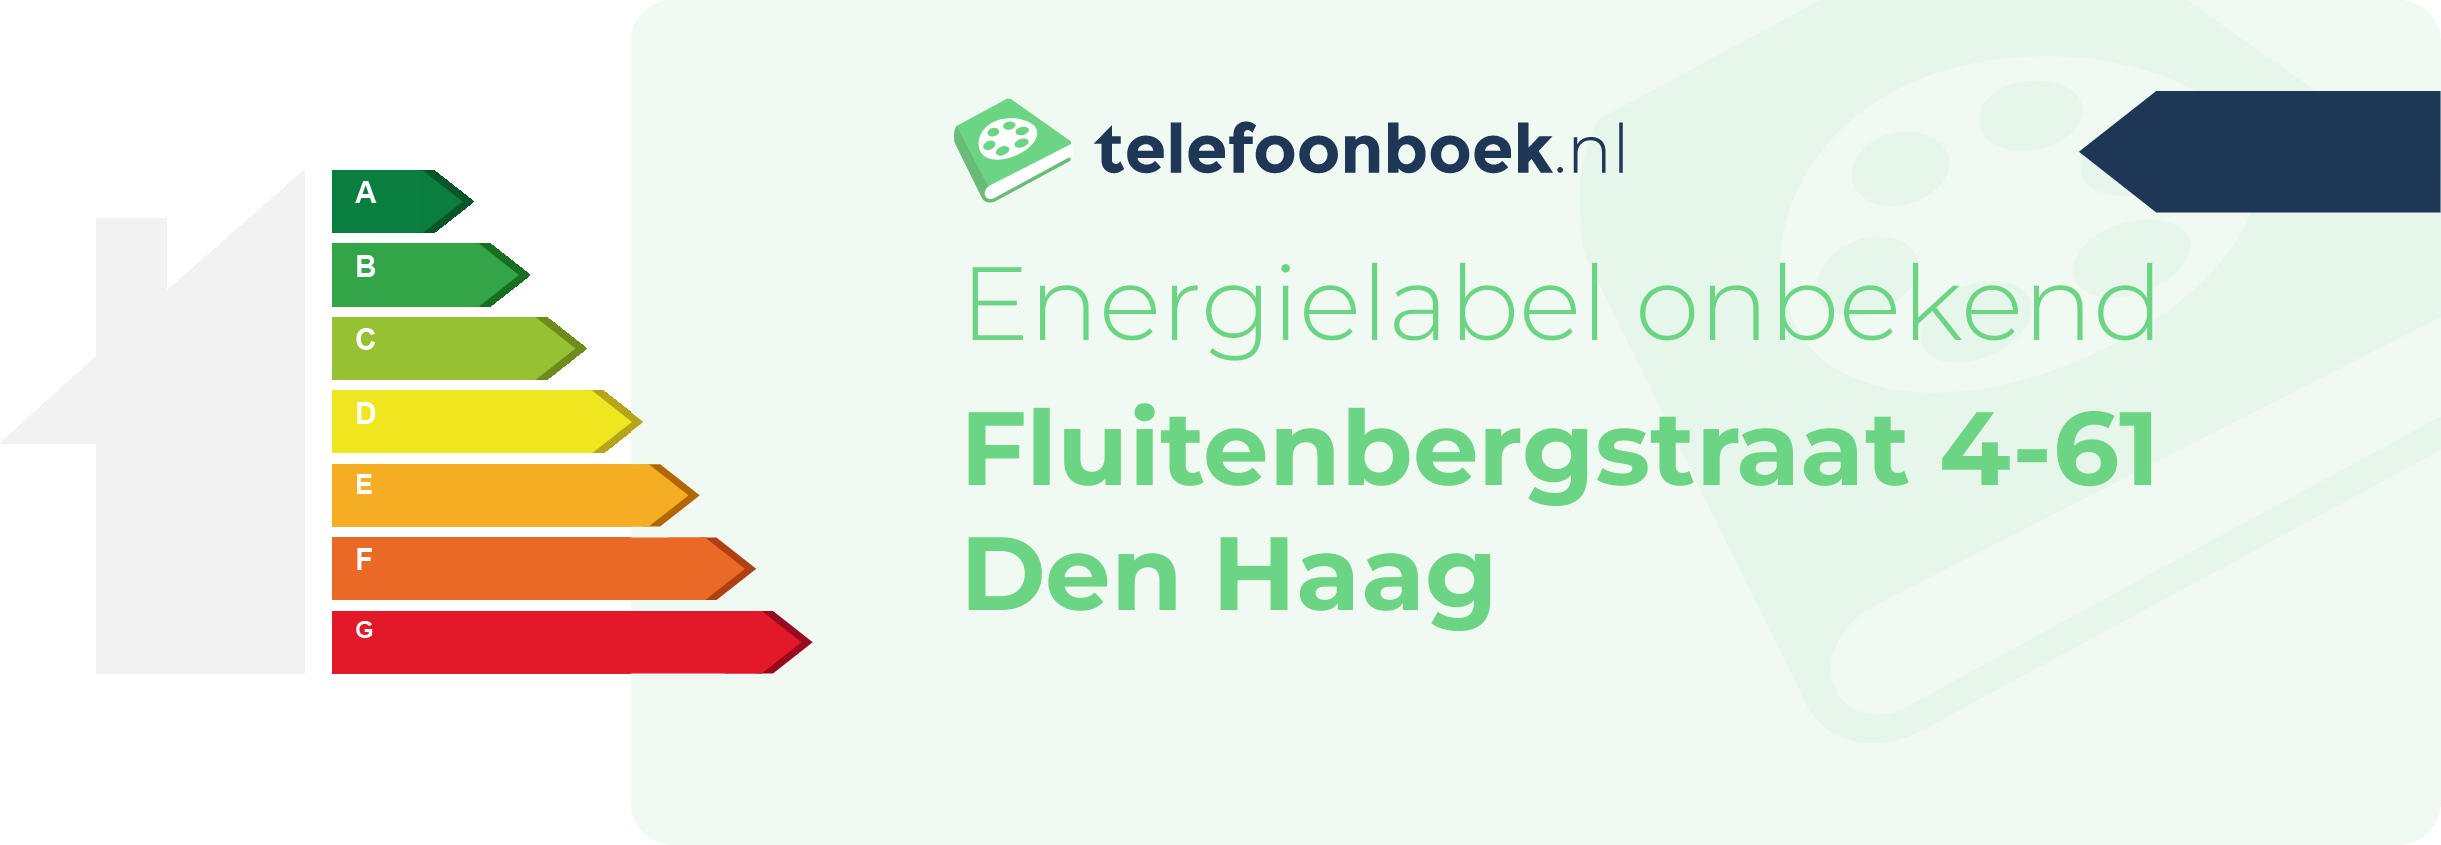 Energielabel Fluitenbergstraat 4-61 Den Haag